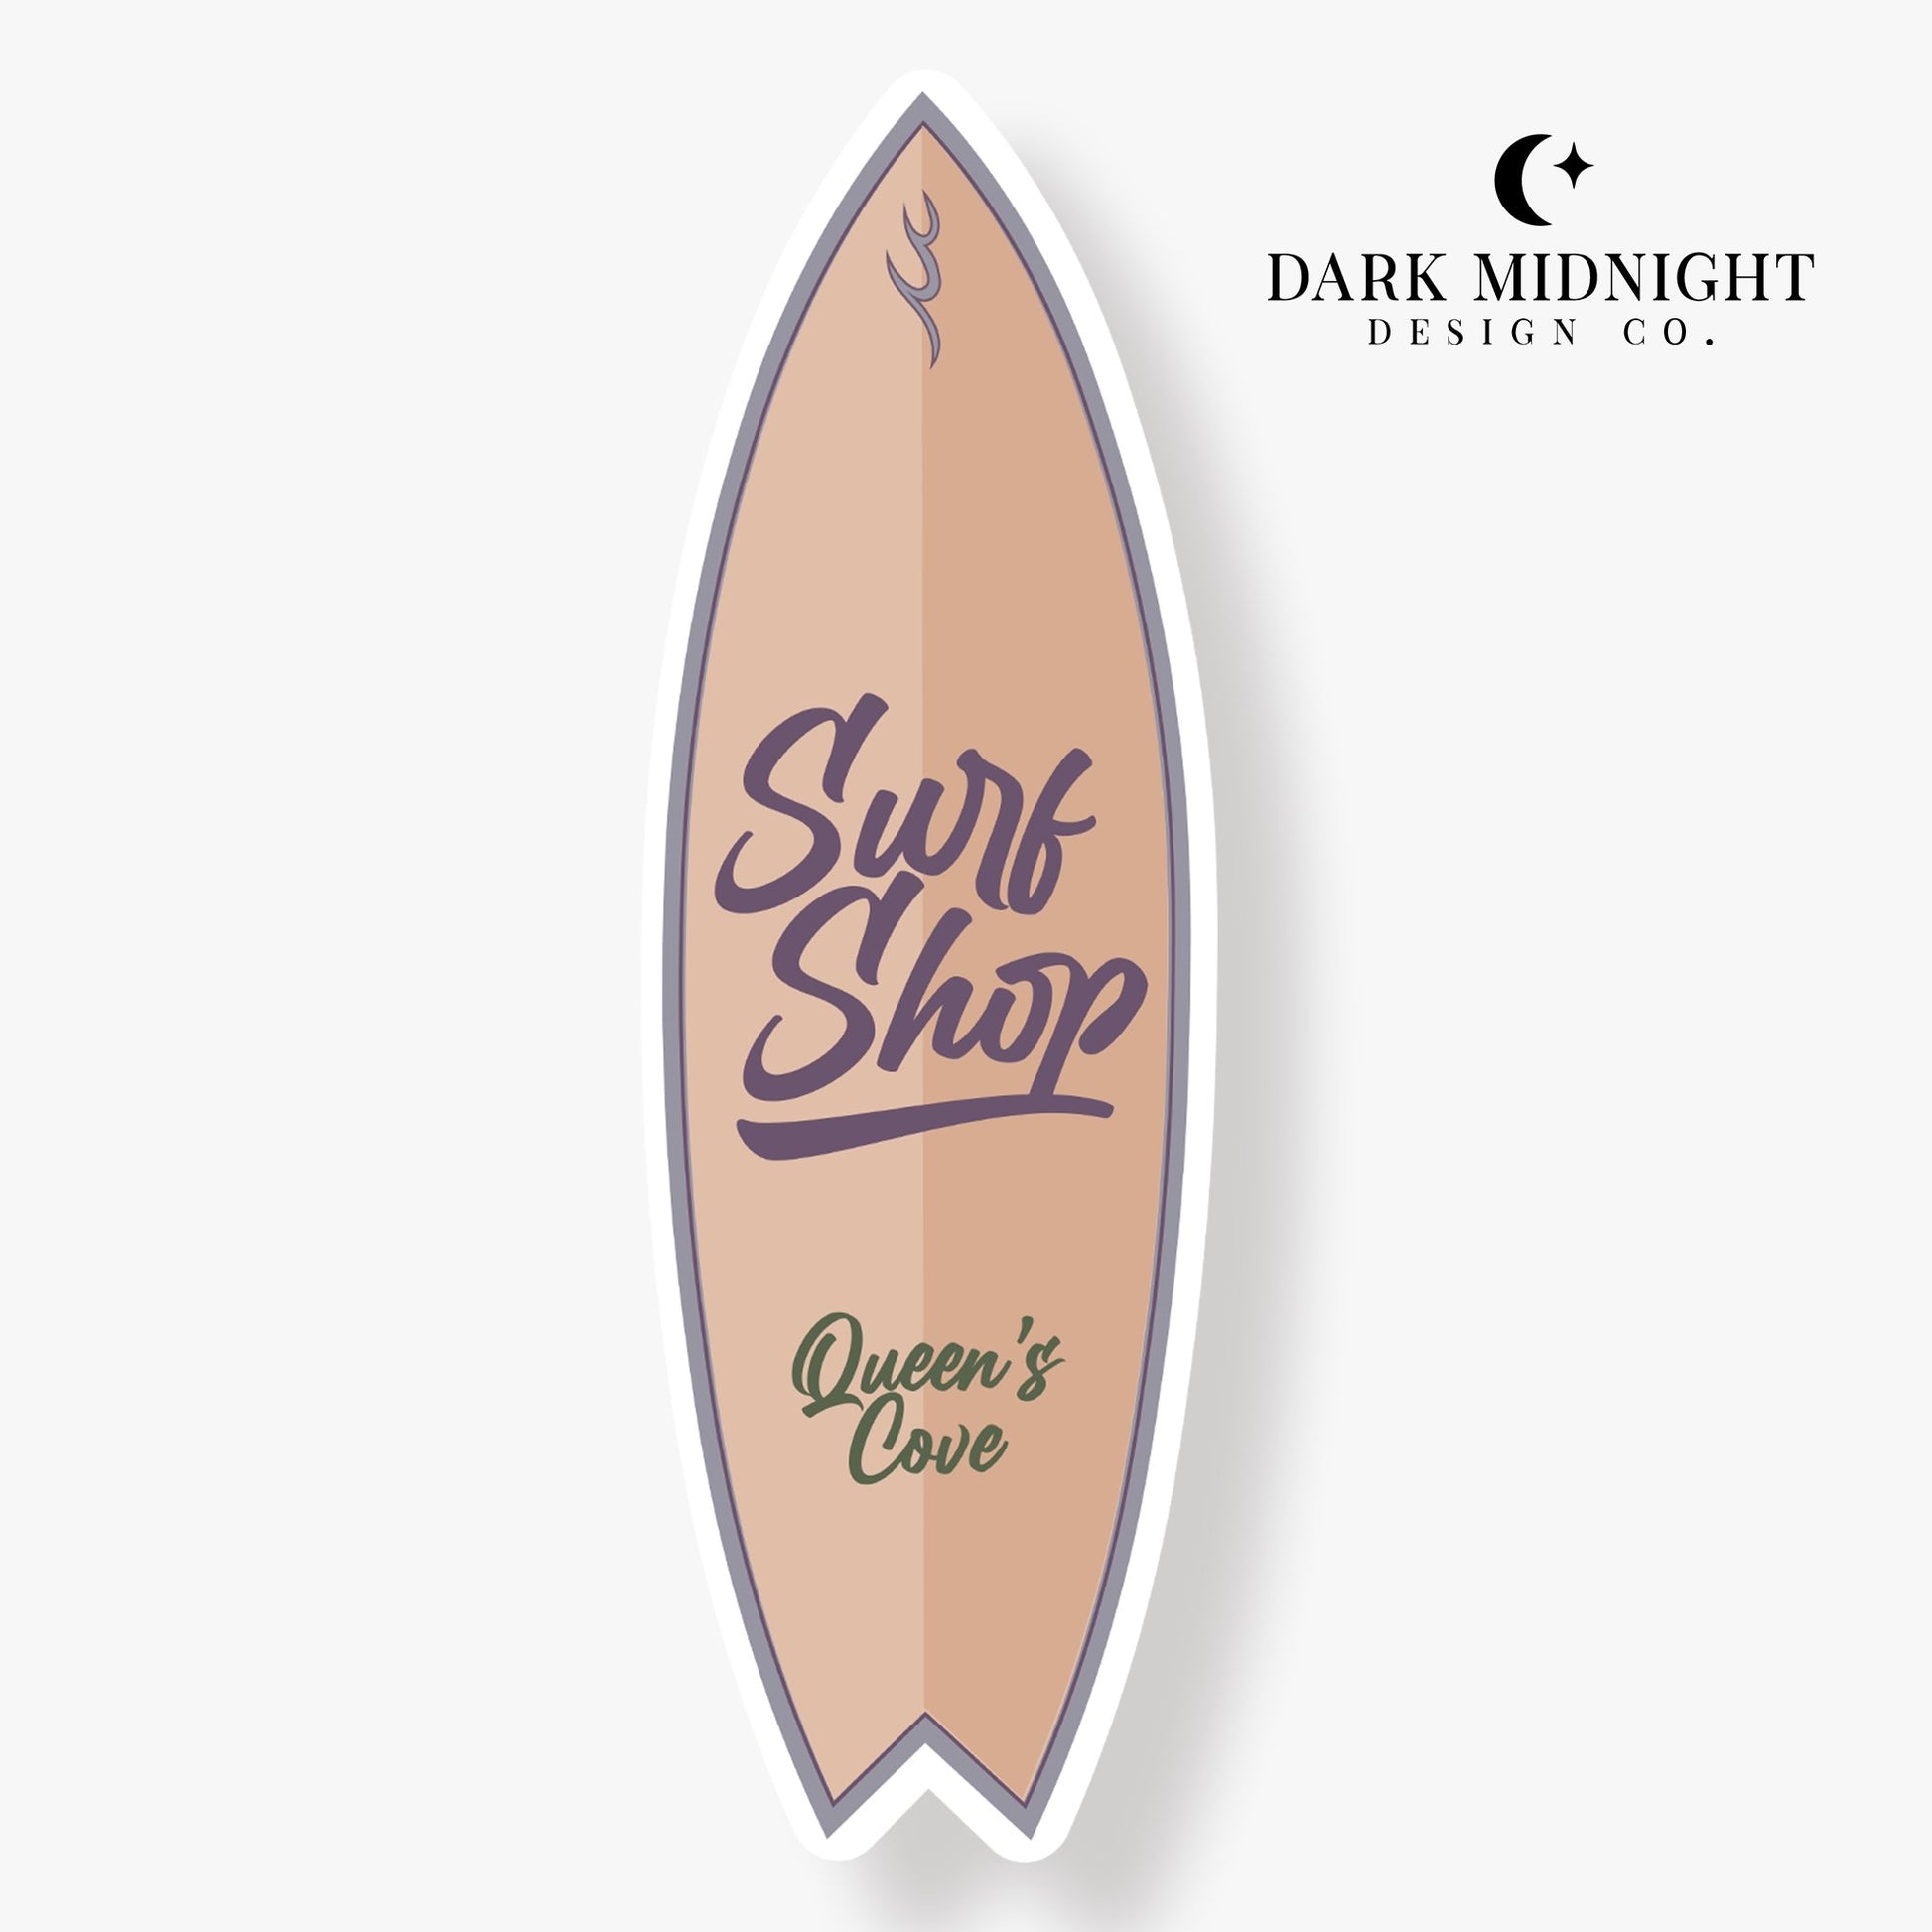 Surf Shop Logo Sticker - Officially Licensed Queen's Cove Series - Dark Midnight Design Co